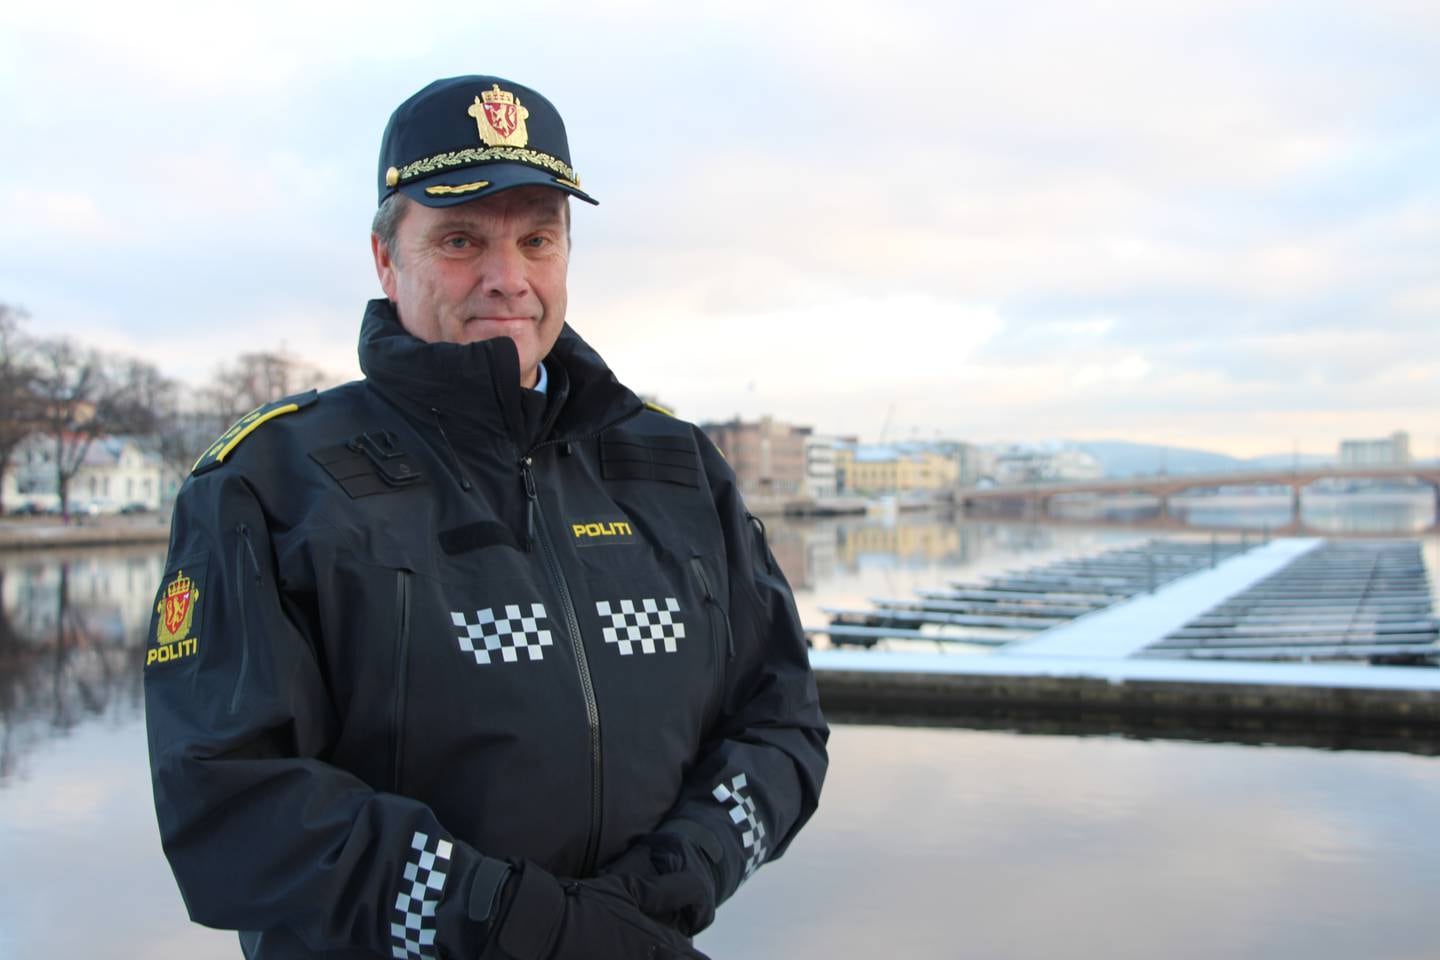 Øyvind Aas, police station chief in Drammen